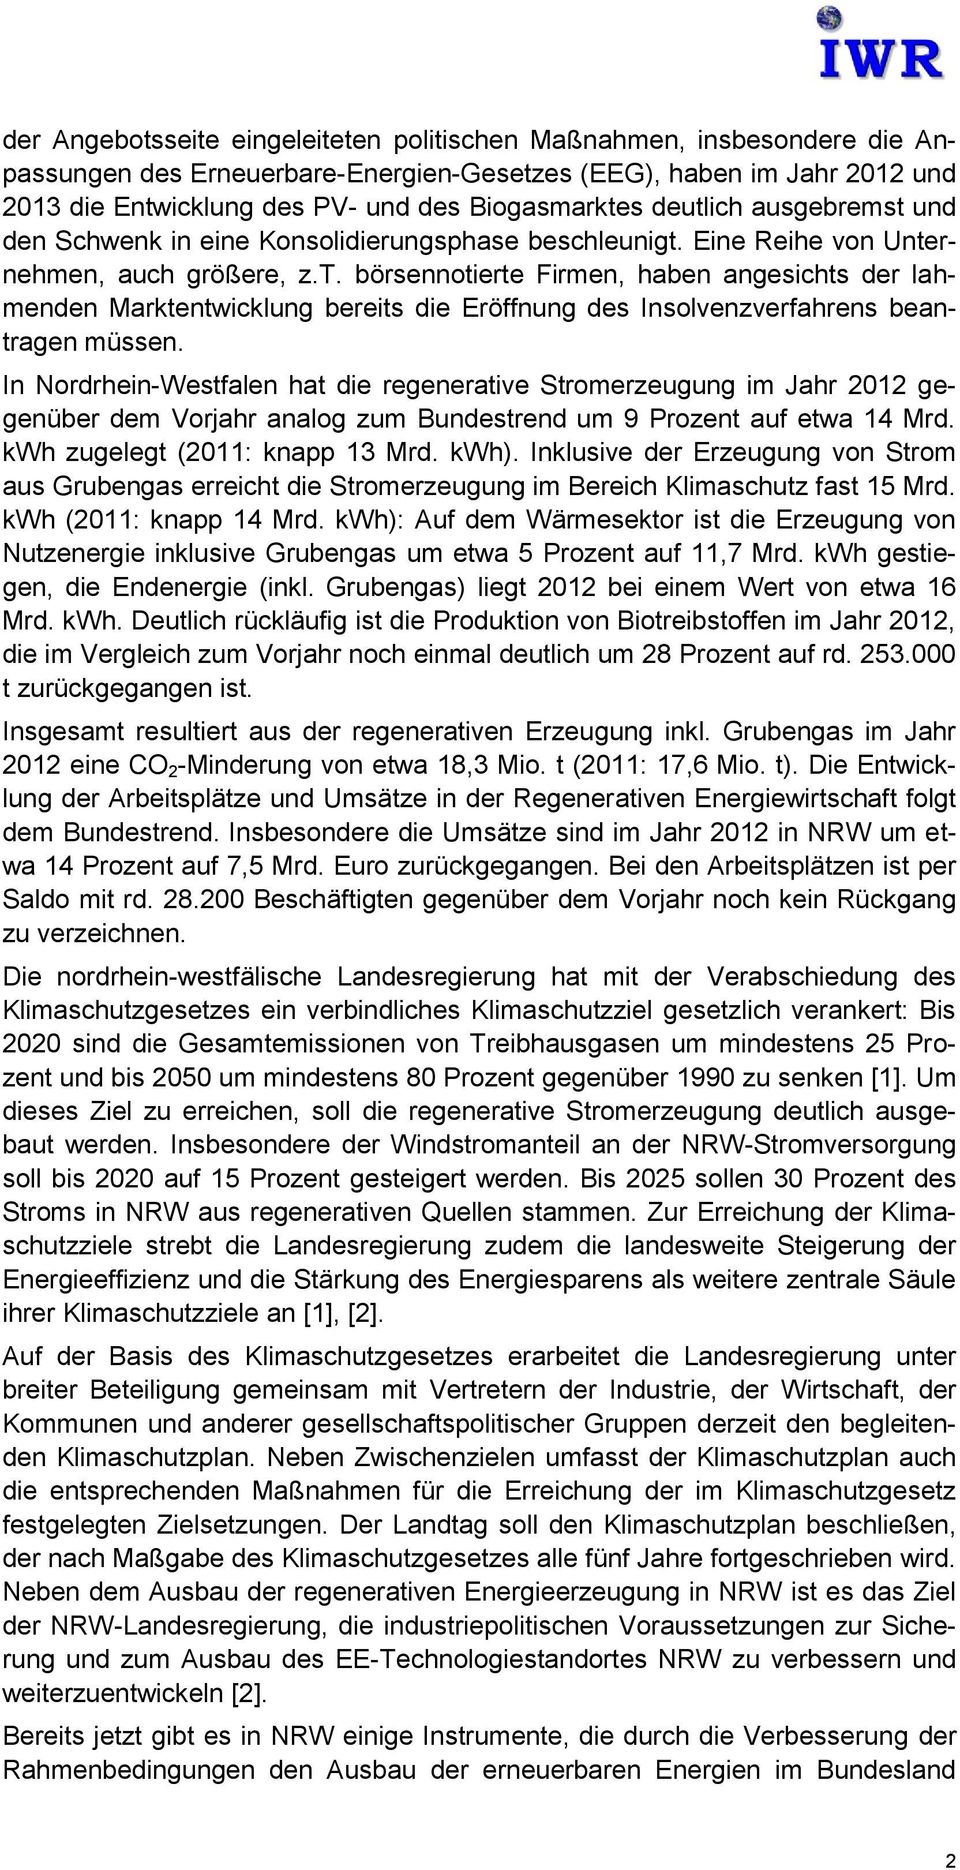 In Nordrhein-Westfalen hat die regenerative Stromerzeugung im Jahr 2012 gegenüber dem Vorjahr analog zum Bundestrend um 9 Prozent auf etwa 14 Mrd. kwh zugelegt (2011: knapp 13 Mrd. kwh).